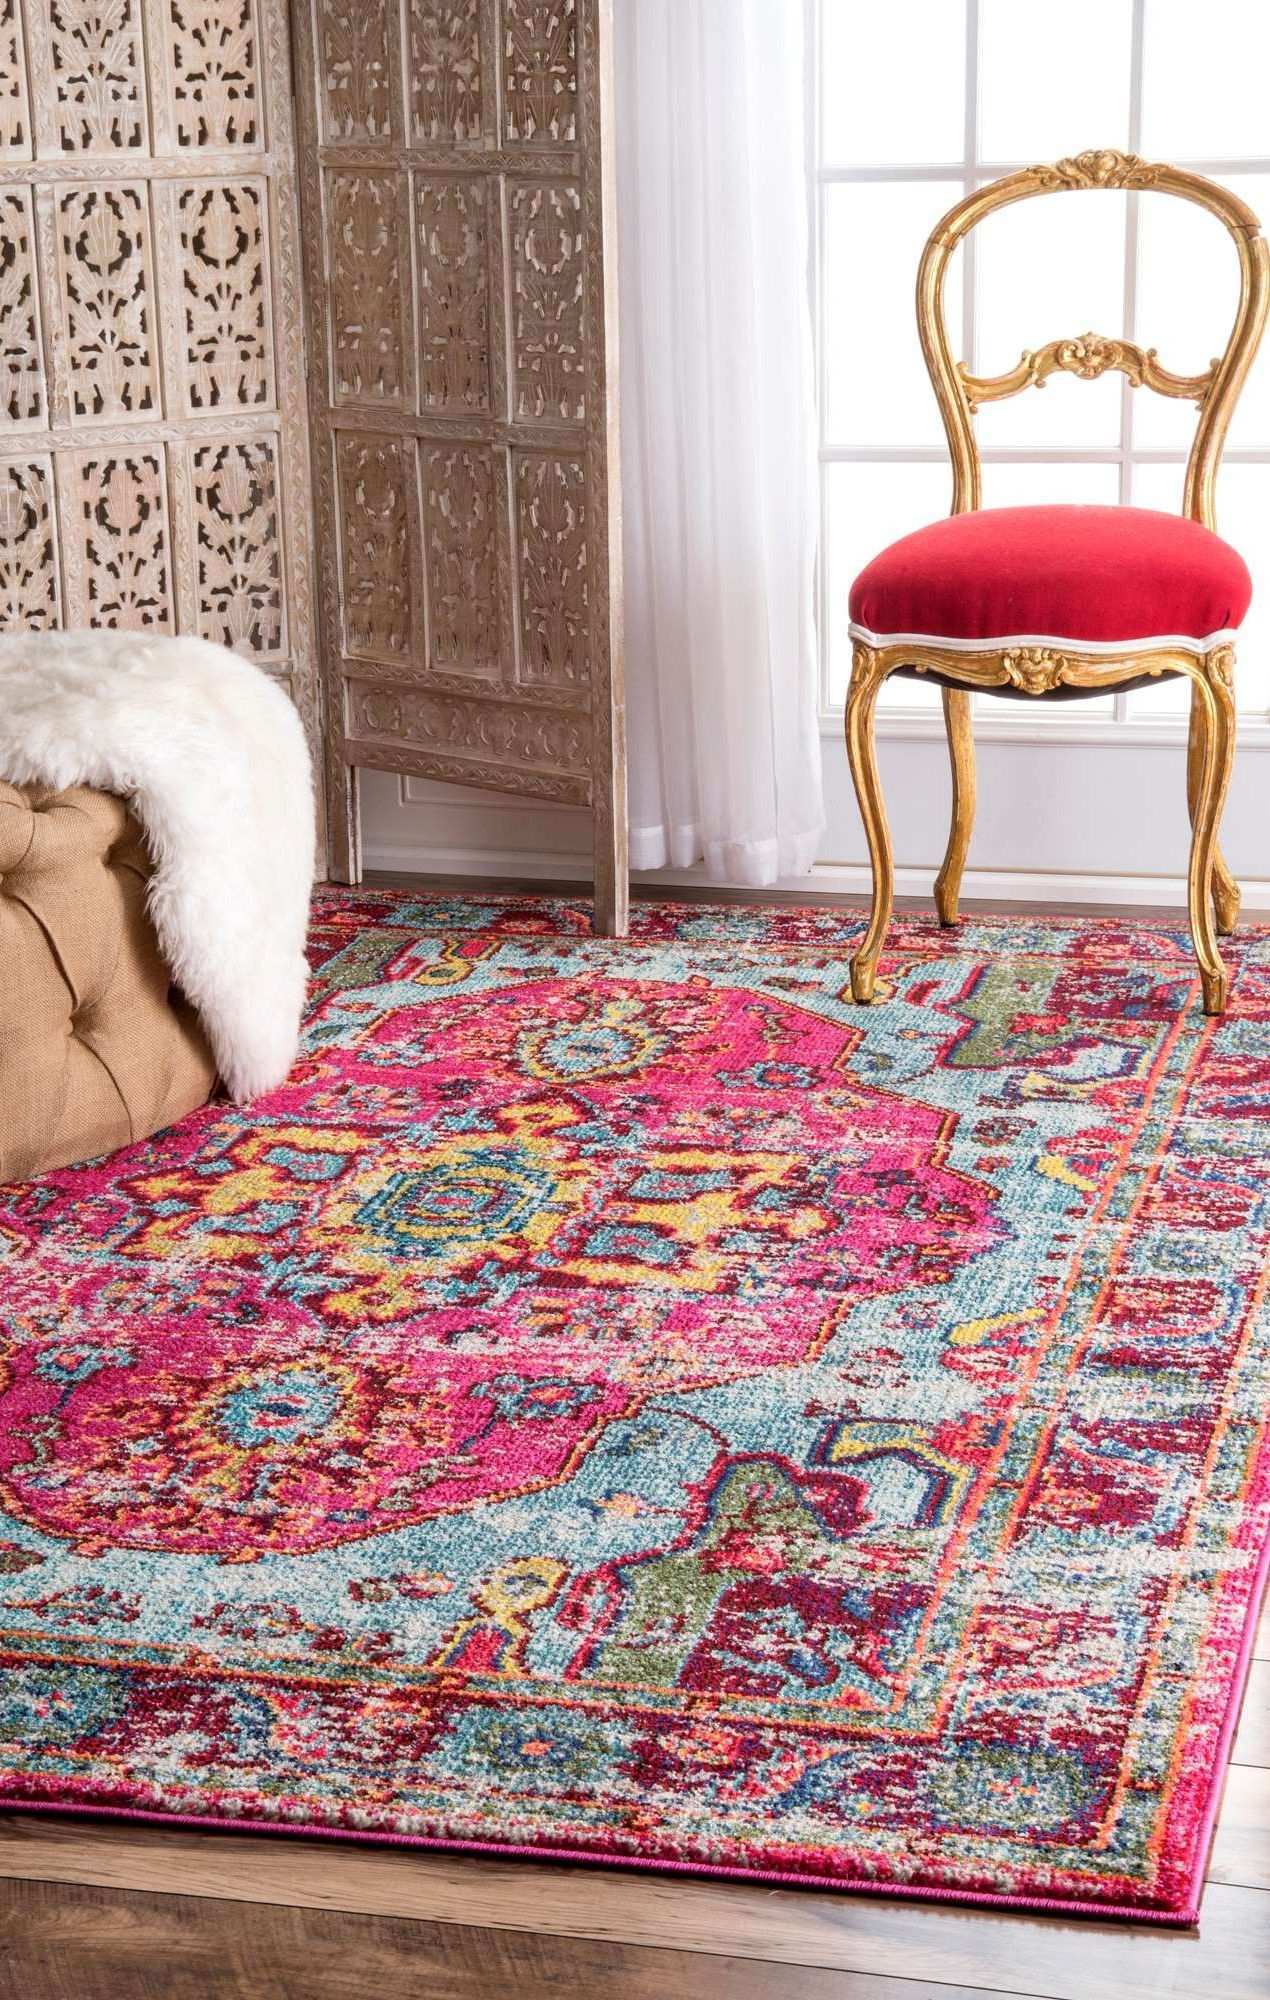 Innenteppich Loughlam In Rosa Traditionelles Teppich Muster Im Vintage Stil Teppich Wohnzimmer Teppichboden Wohnzimmer Teppich